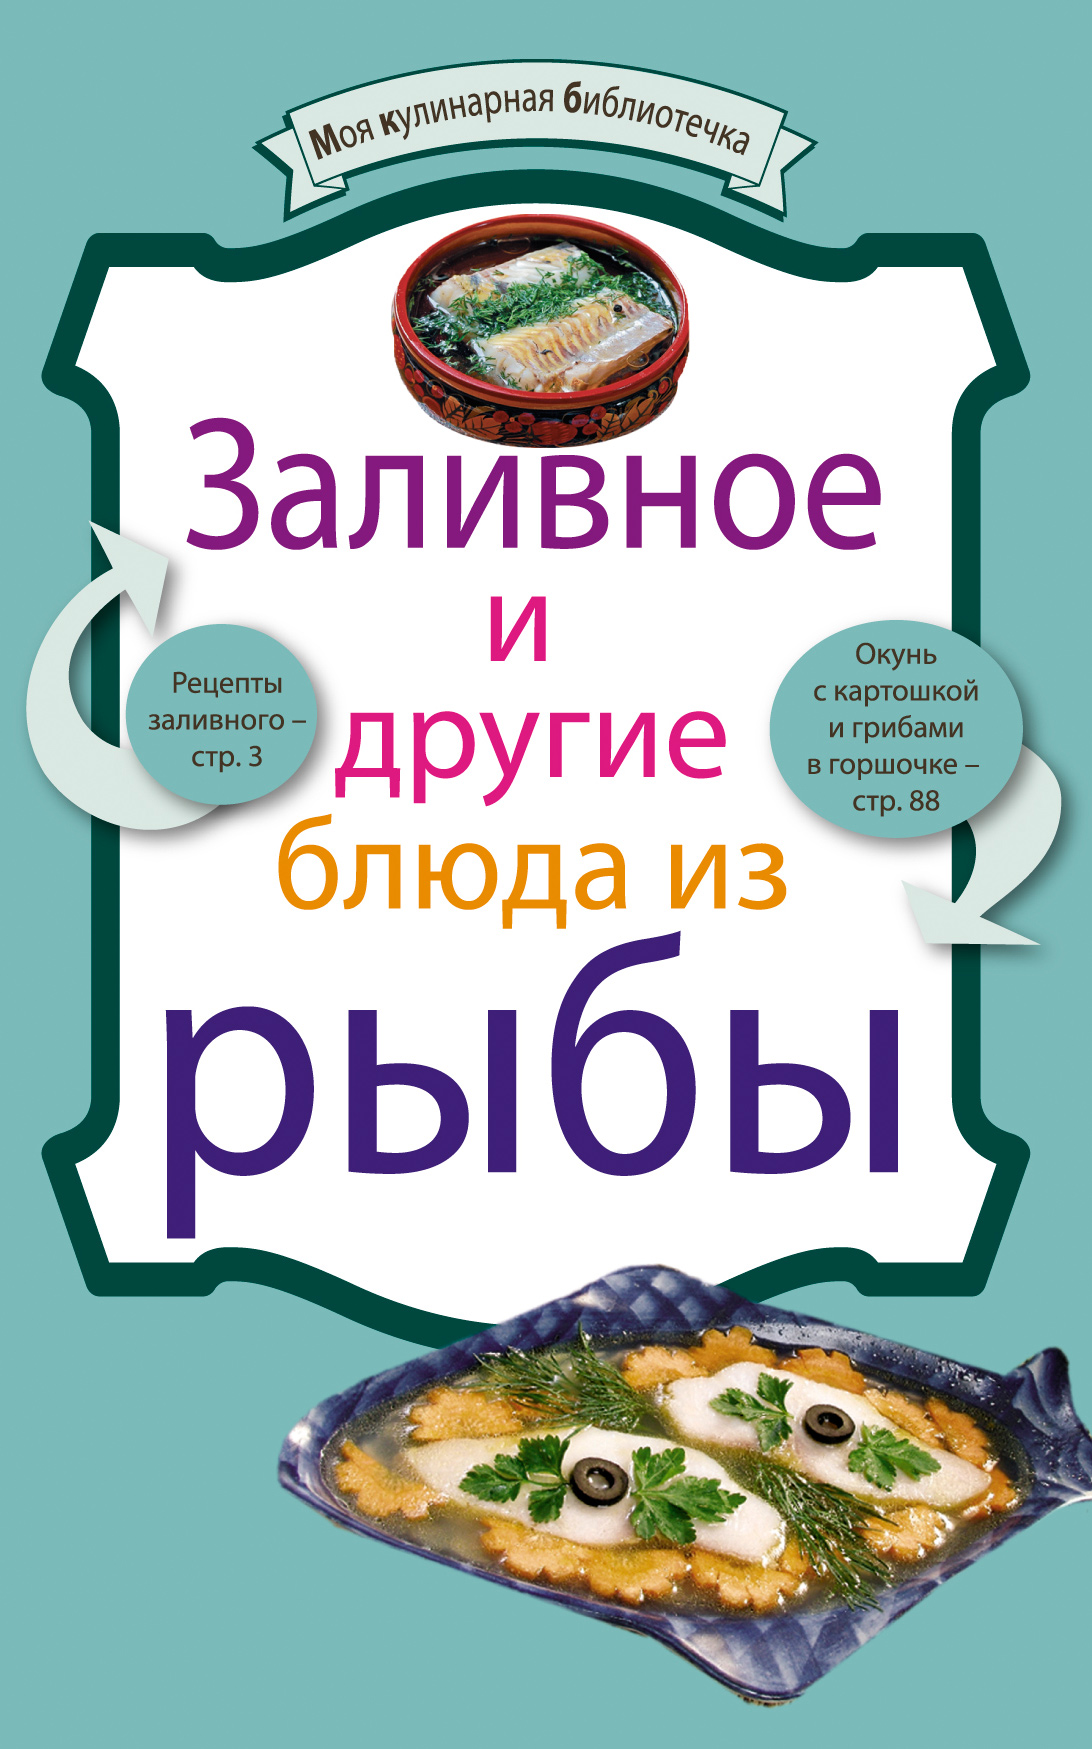 Книга Заливное и другие блюда из рыбы из серии Моя кулинарная библиотечка, созданная , может относится к жанру Кулинария. Стоимость электронной книги Заливное и другие блюда из рыбы с идентификатором 649875 составляет 19.99 руб.